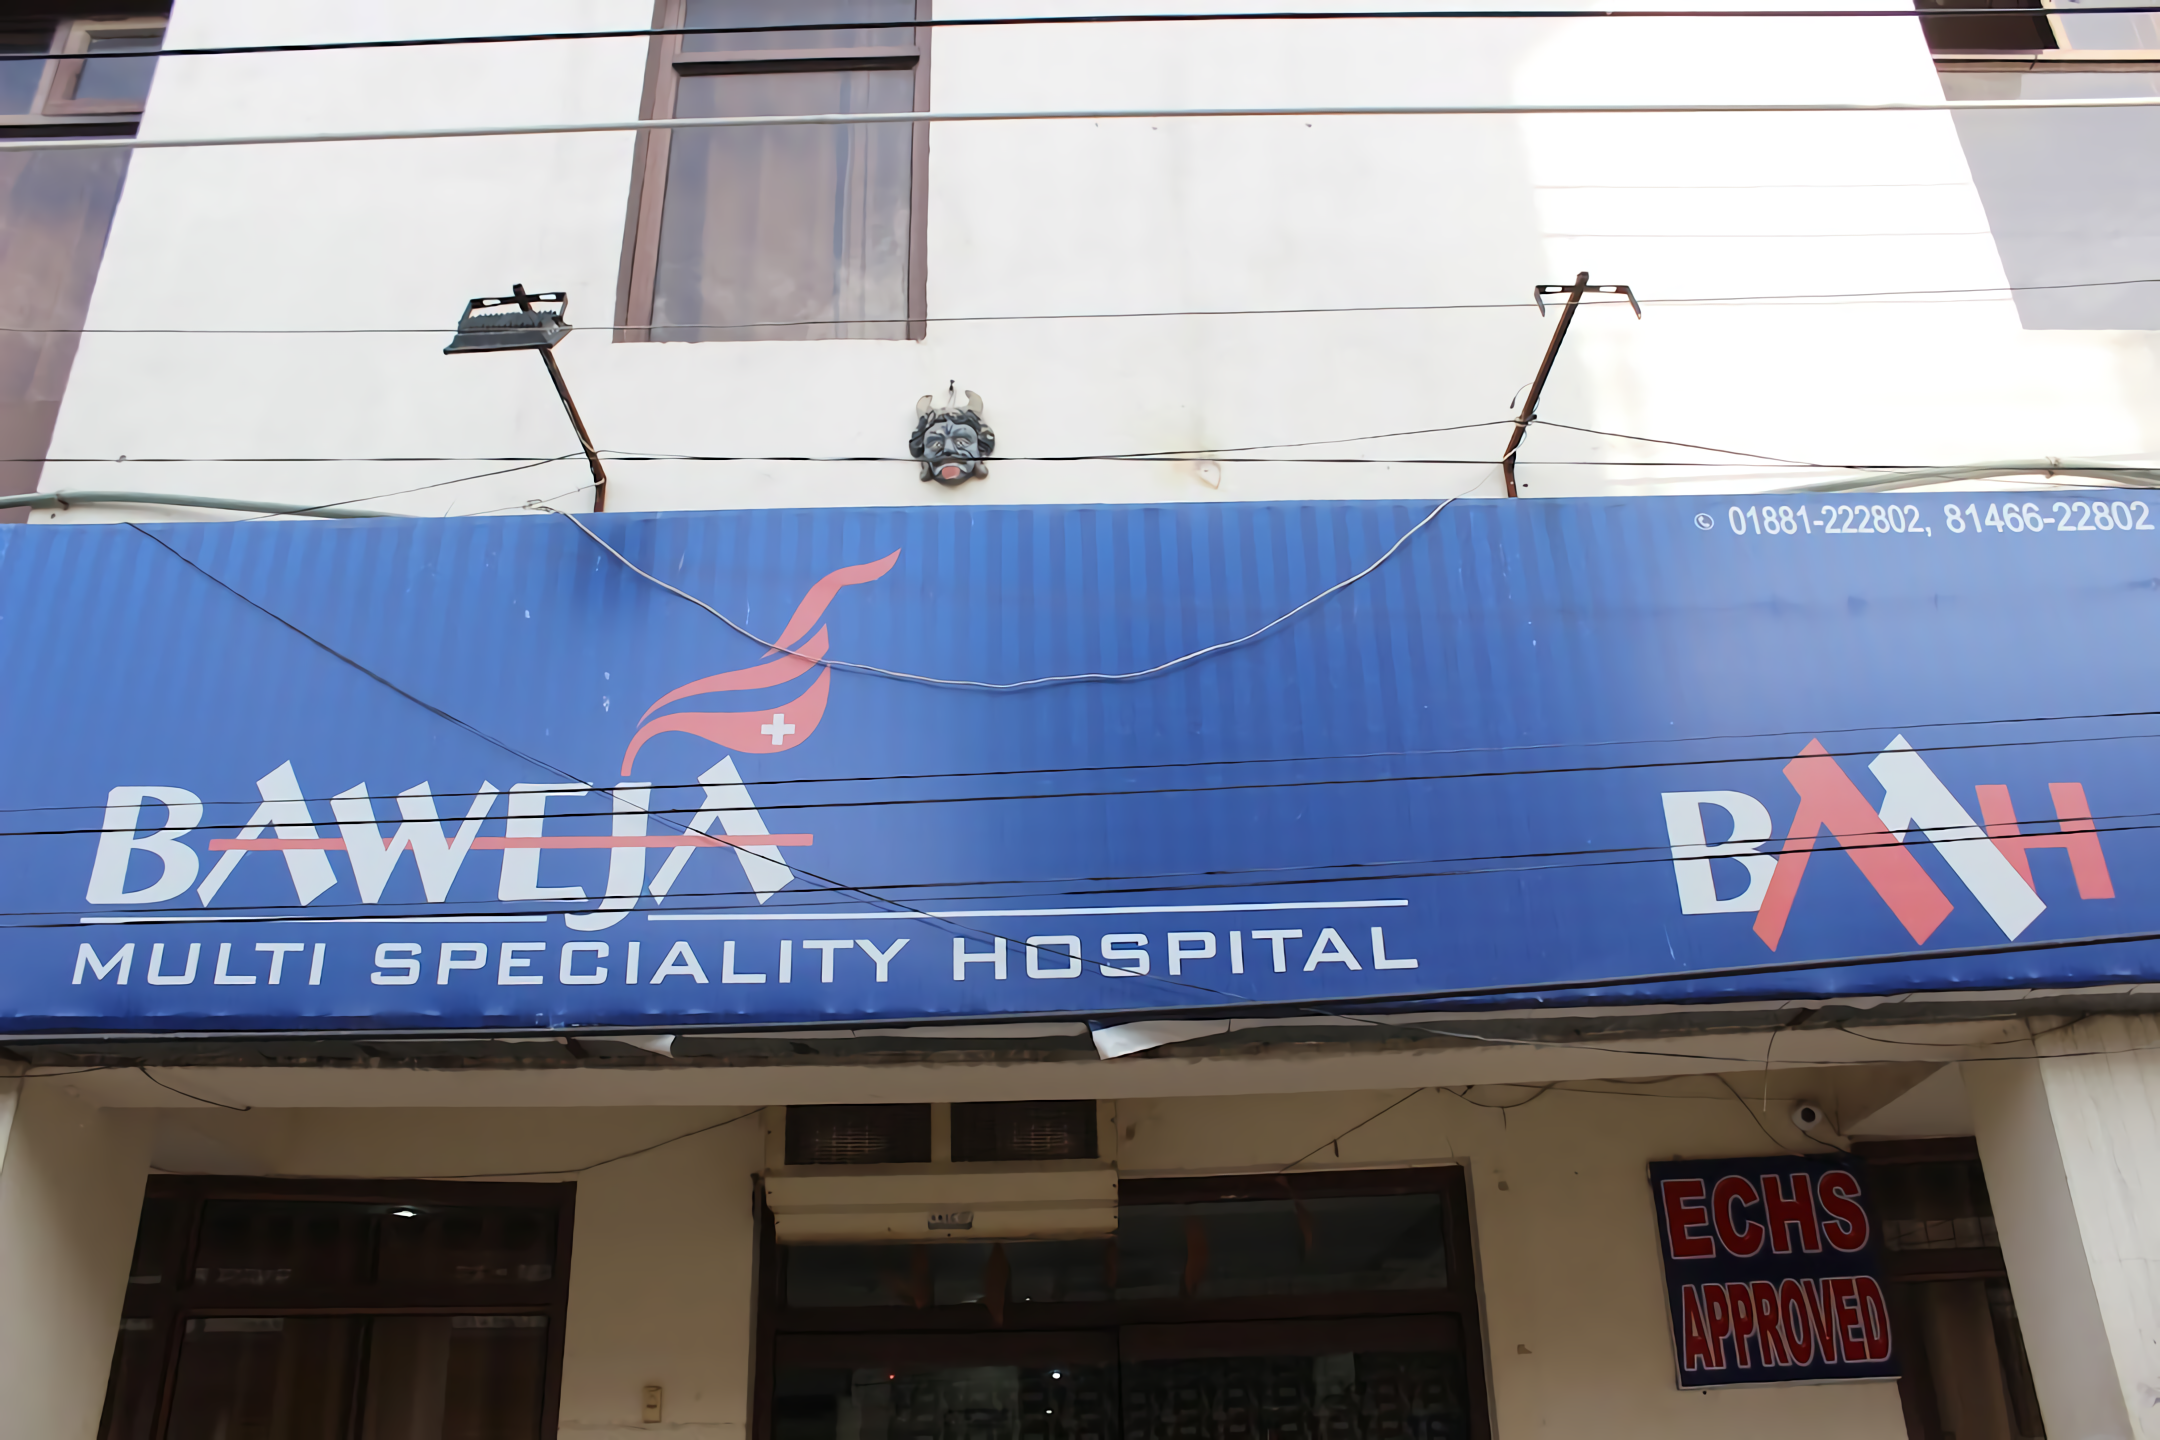 Baweja Multispeciality Hospital